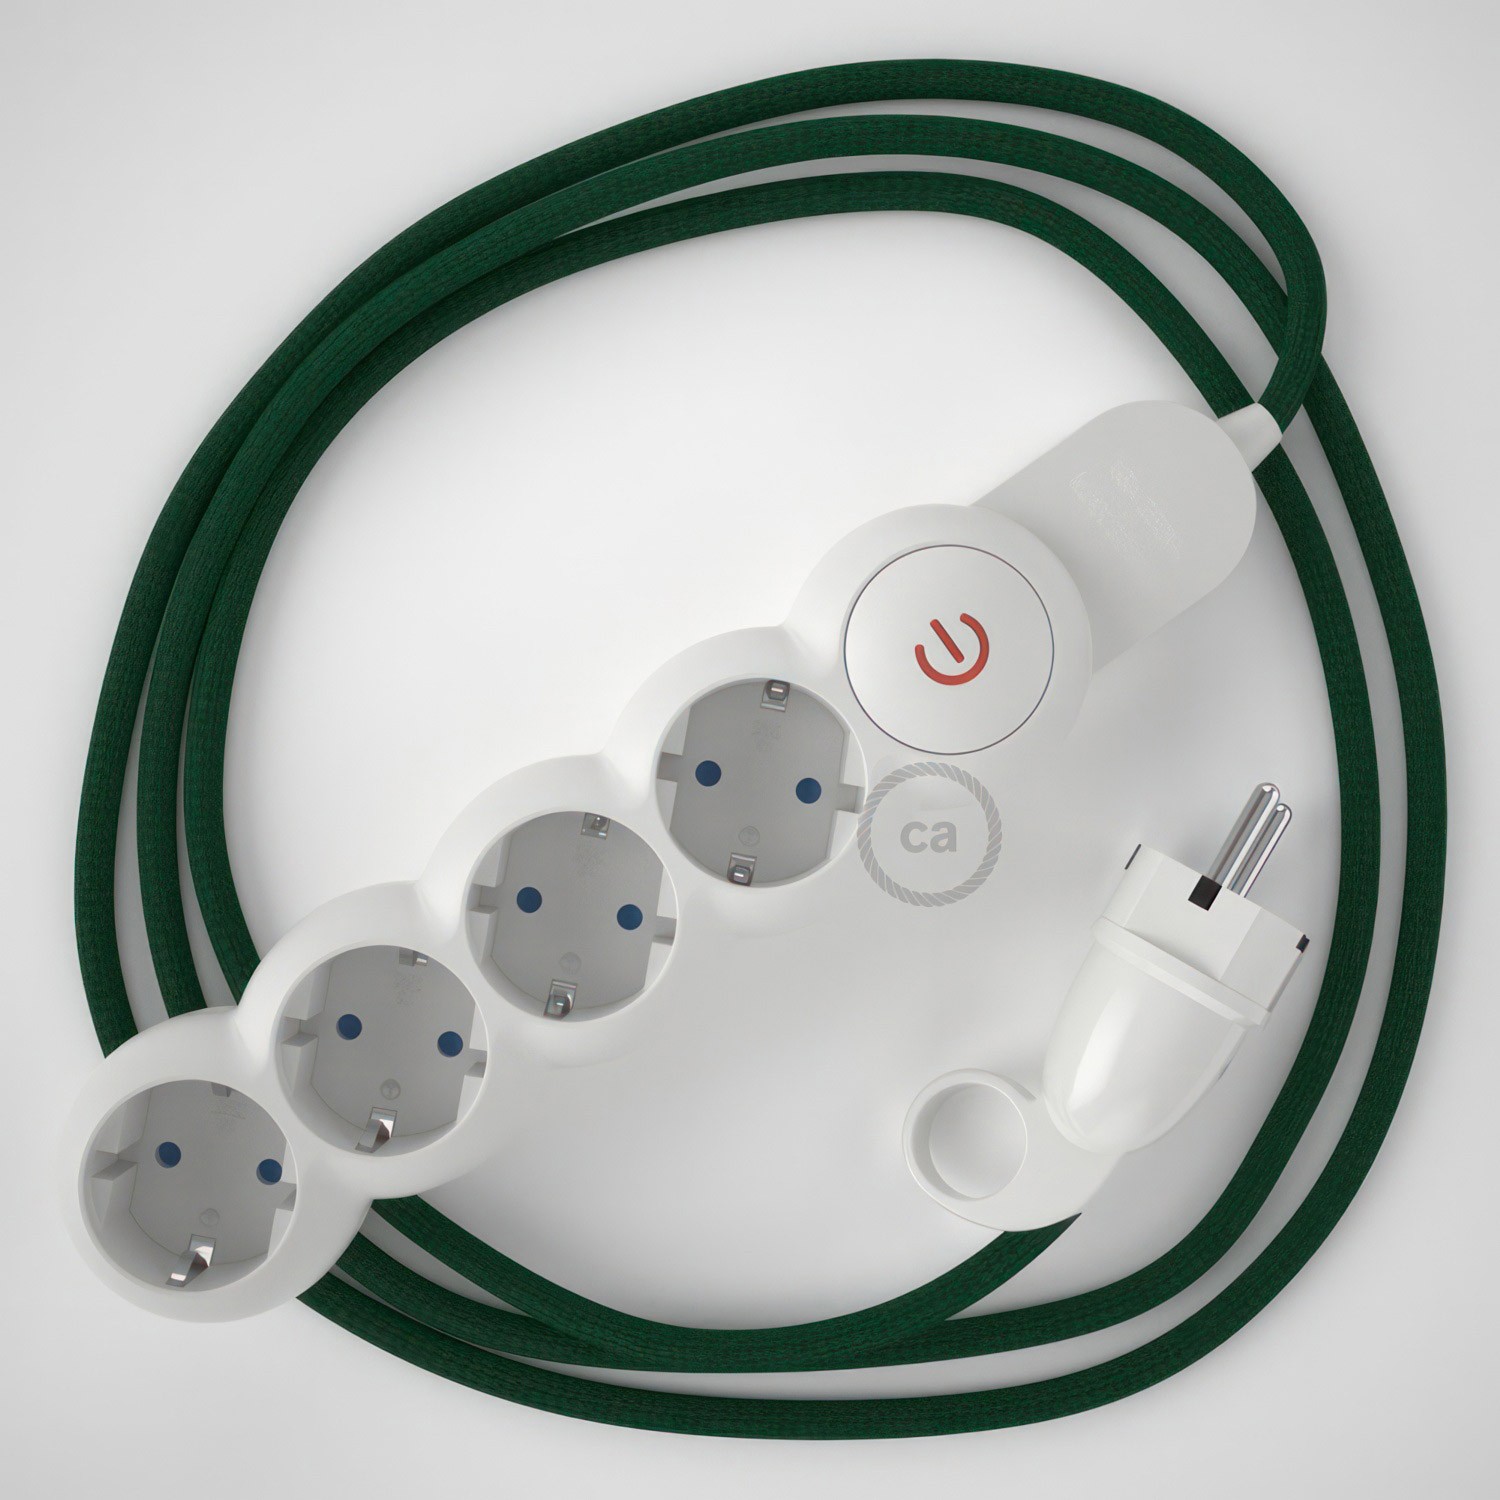 Multienchufe alemán con cable en tejido efecto seda Verde Oscuro RM21 y clavija Schuko con anillo comfort